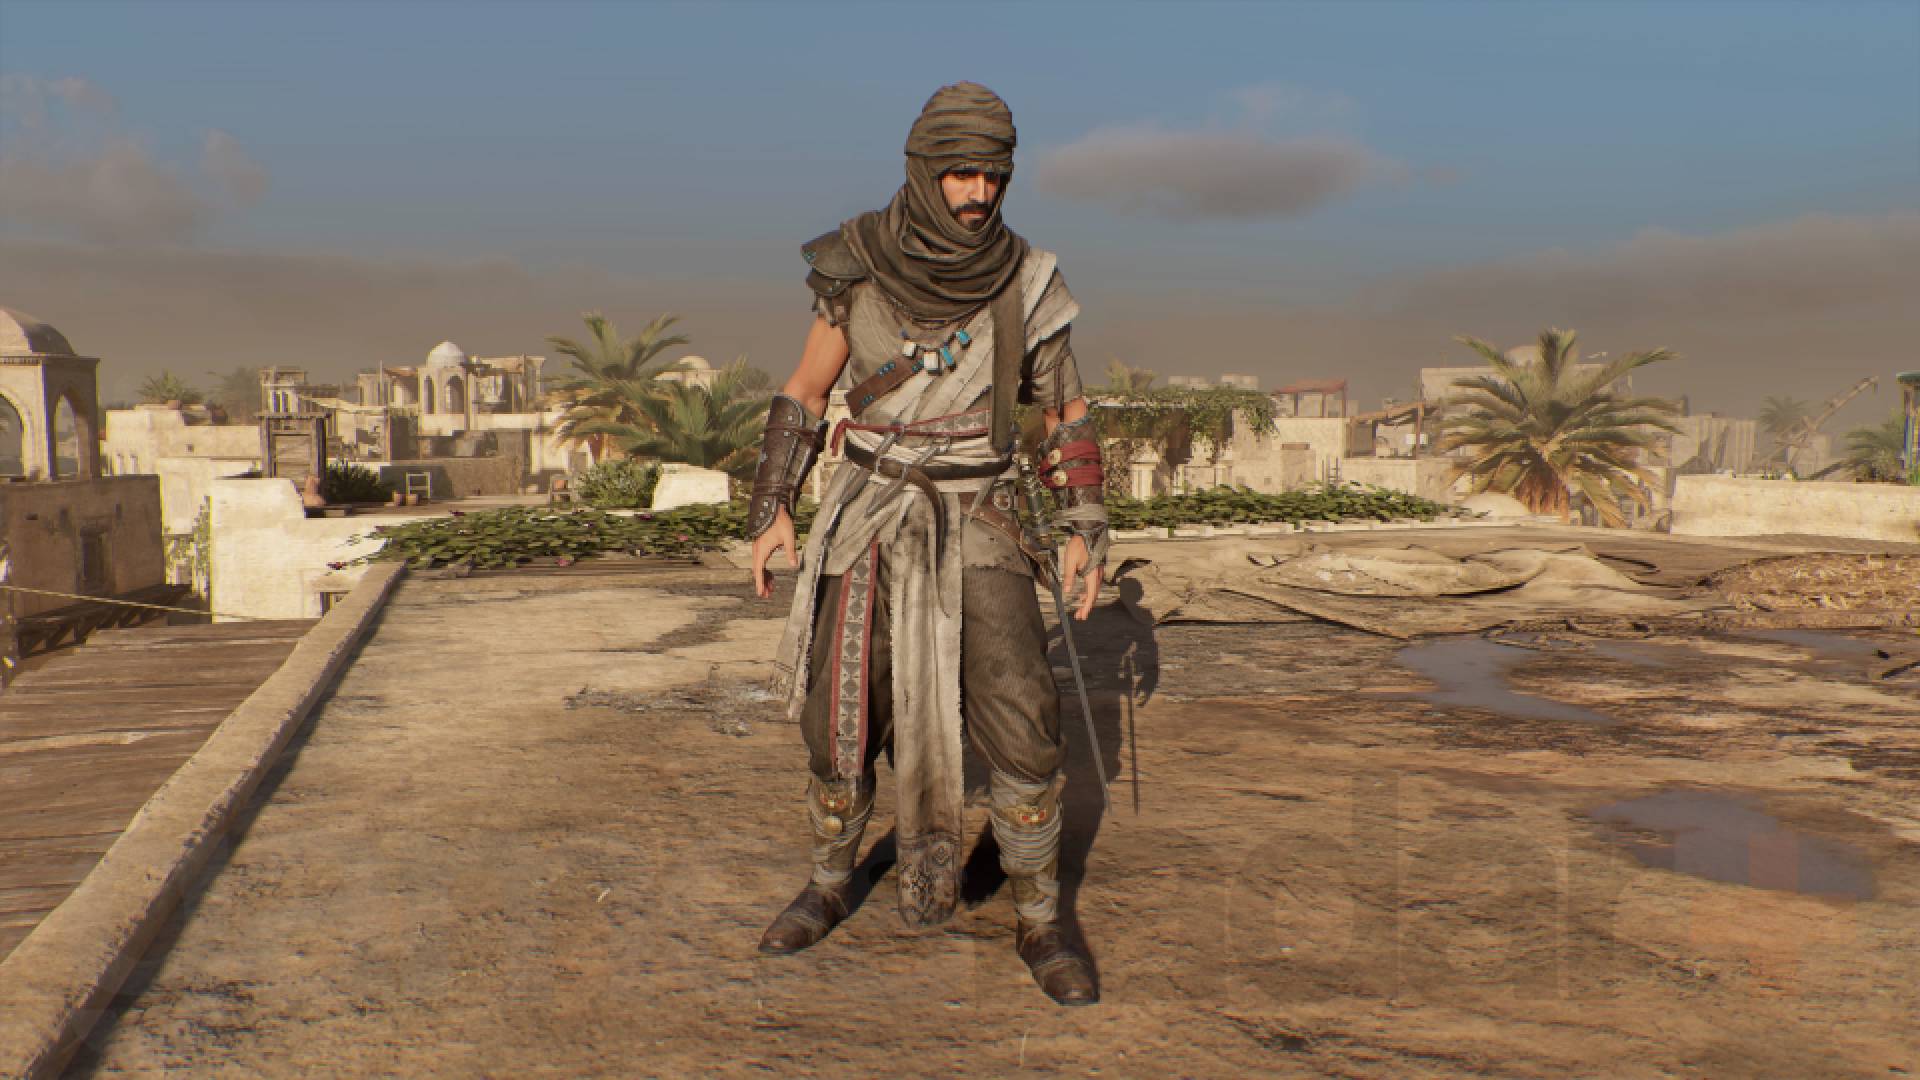 Mirage Basim de Assassin's Creed usando fantasia de viajante do deserto